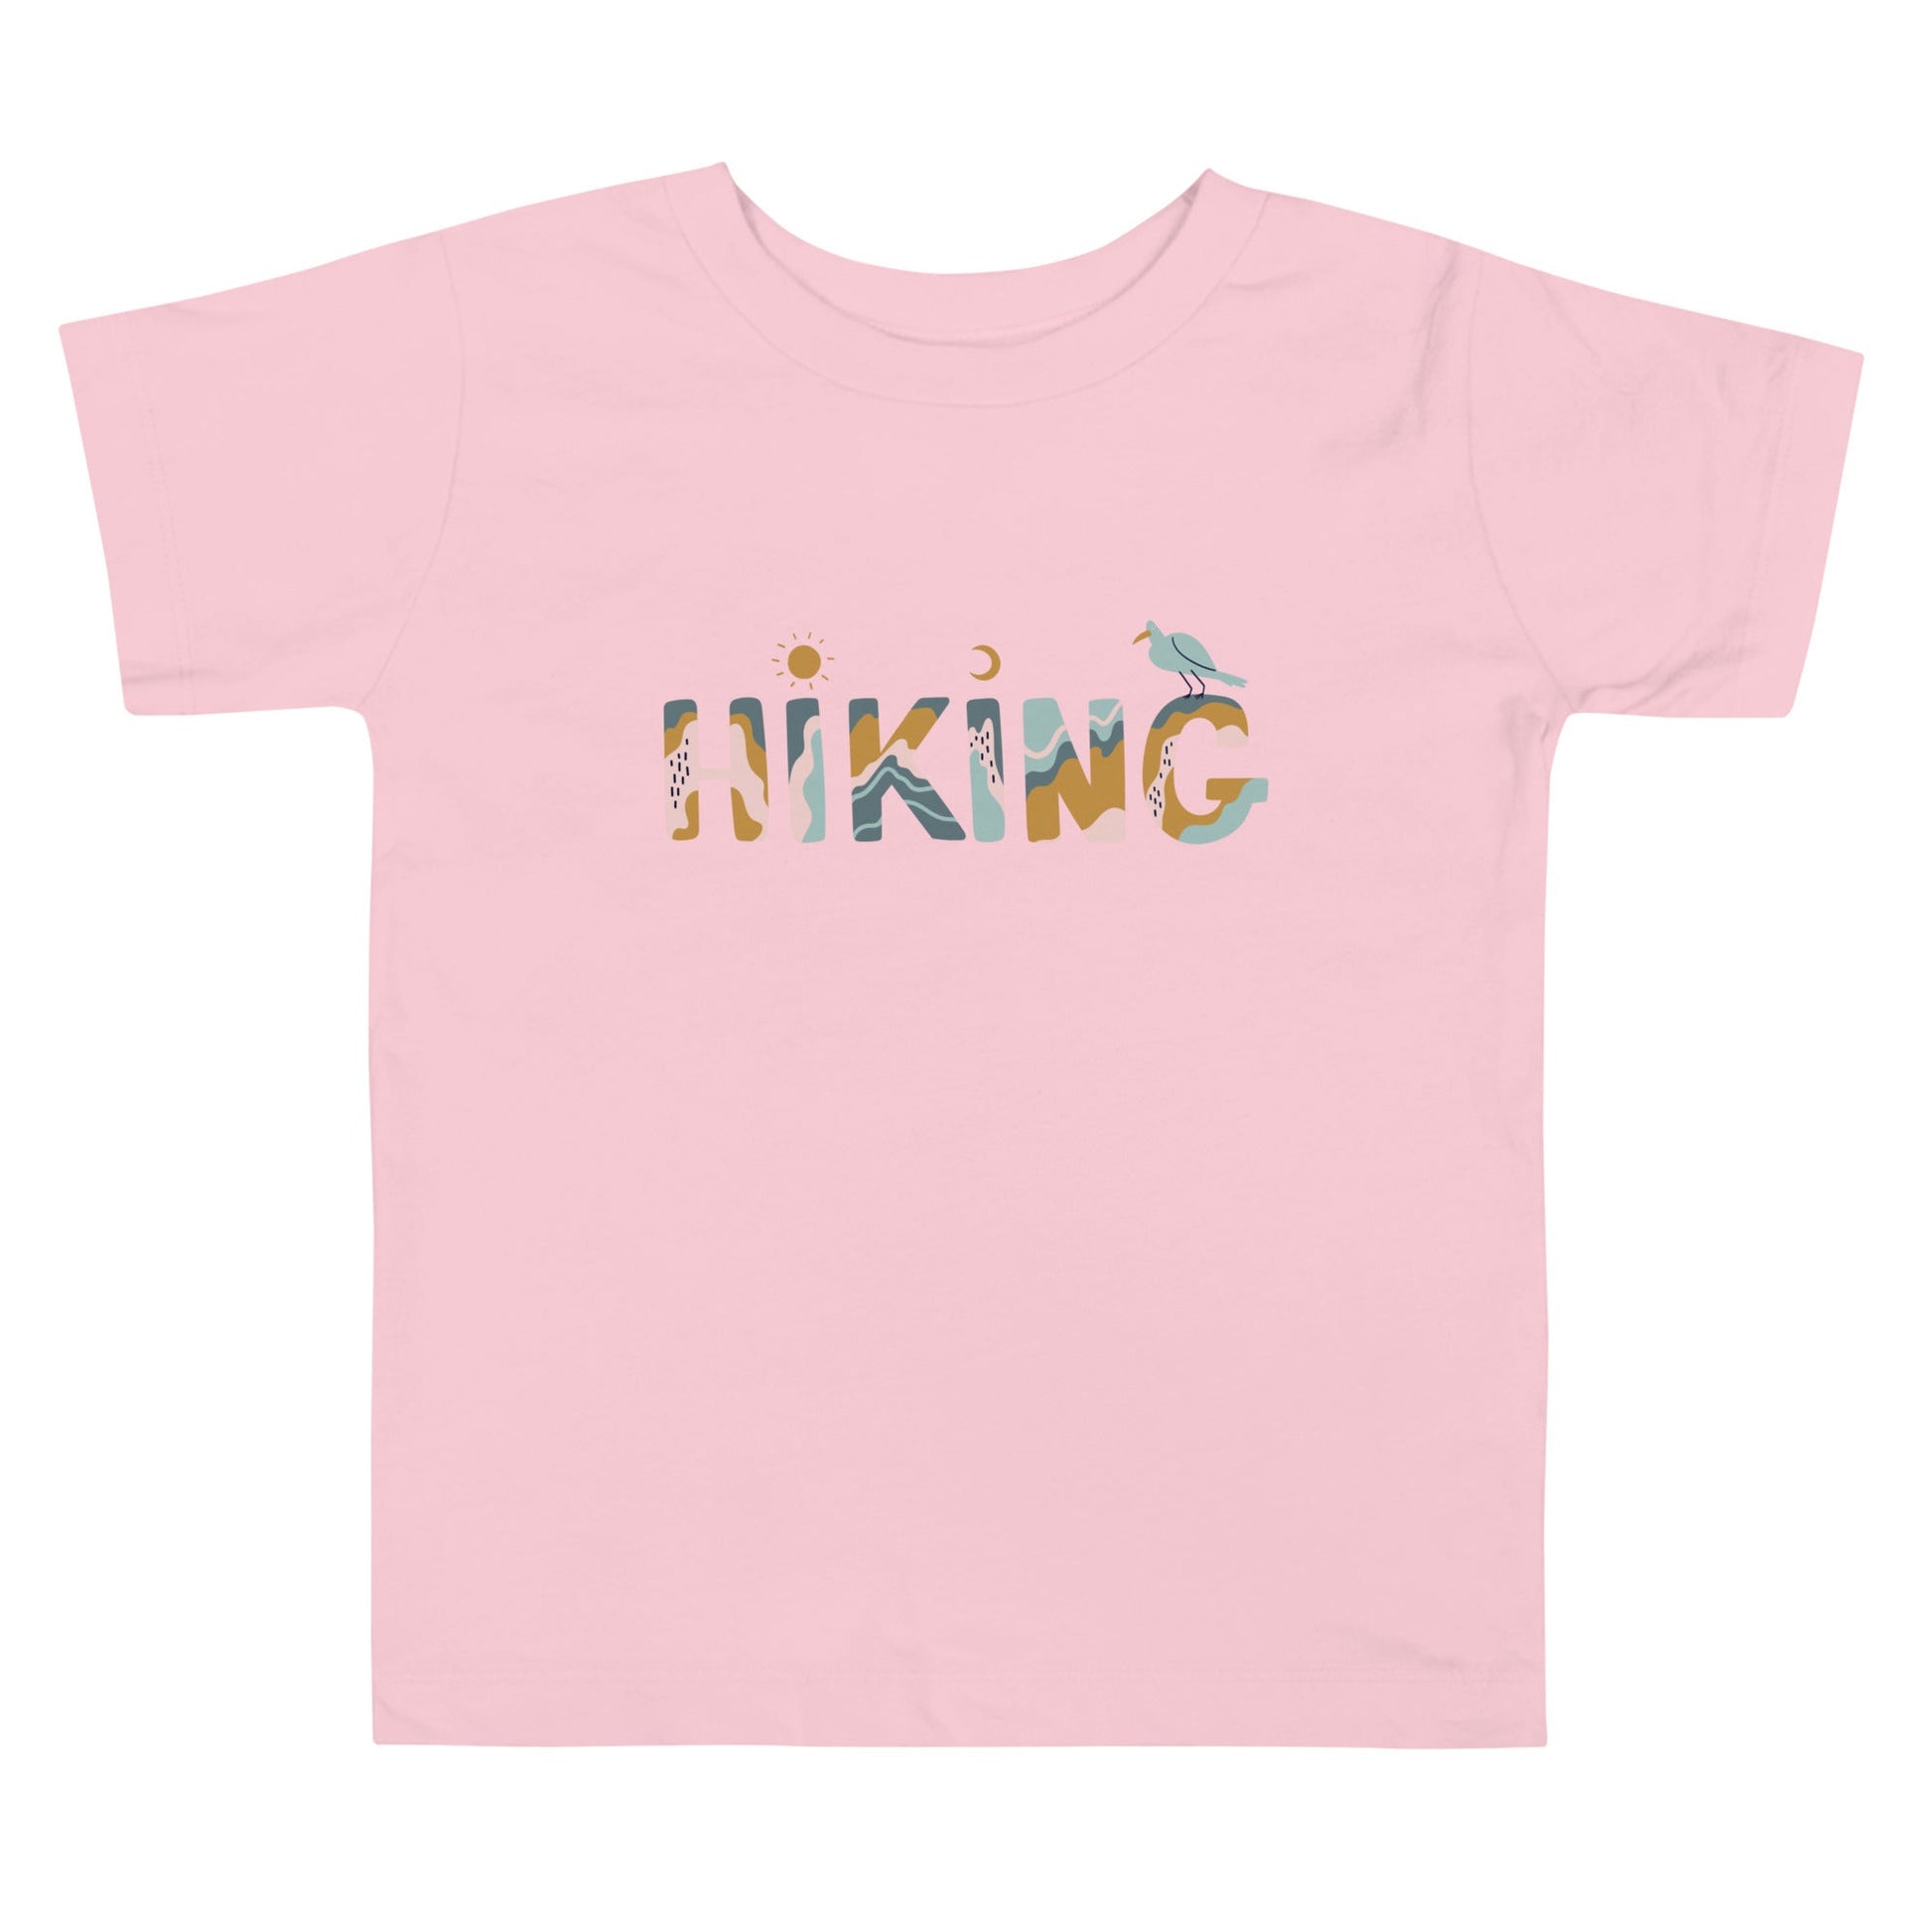 Kids Hiking T - Shirts | Toddler Short Sleeve Tee